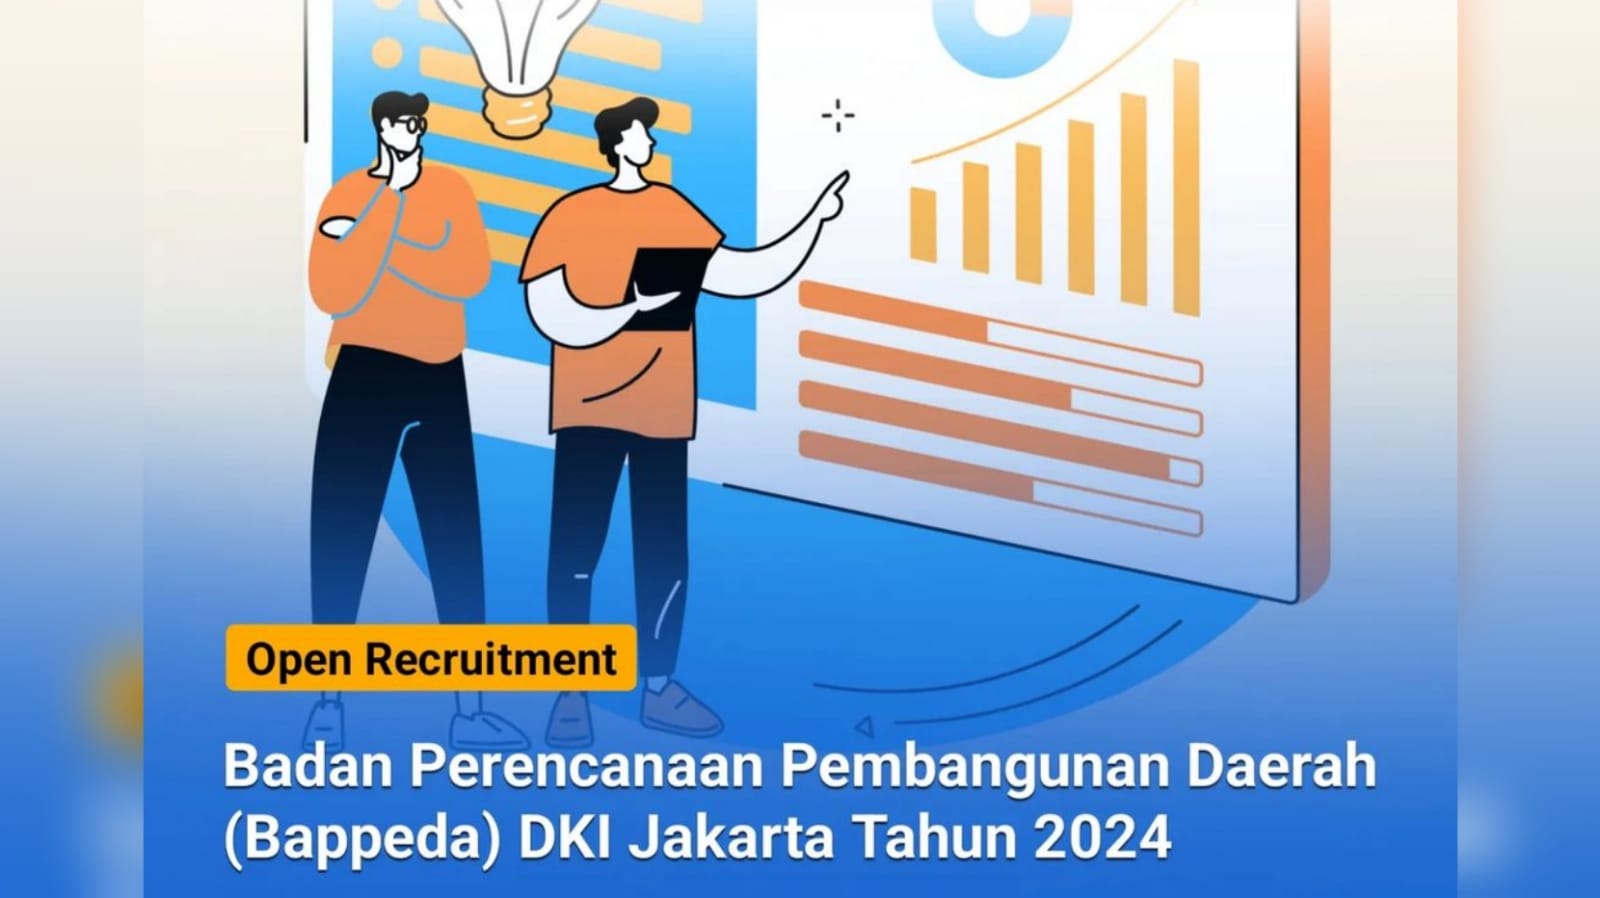 Lowongan Kerja: Rekrutmen Badan Perencanaan Pembangunan Daerah (Bappeda) DKI Jakarta Tahun 2024